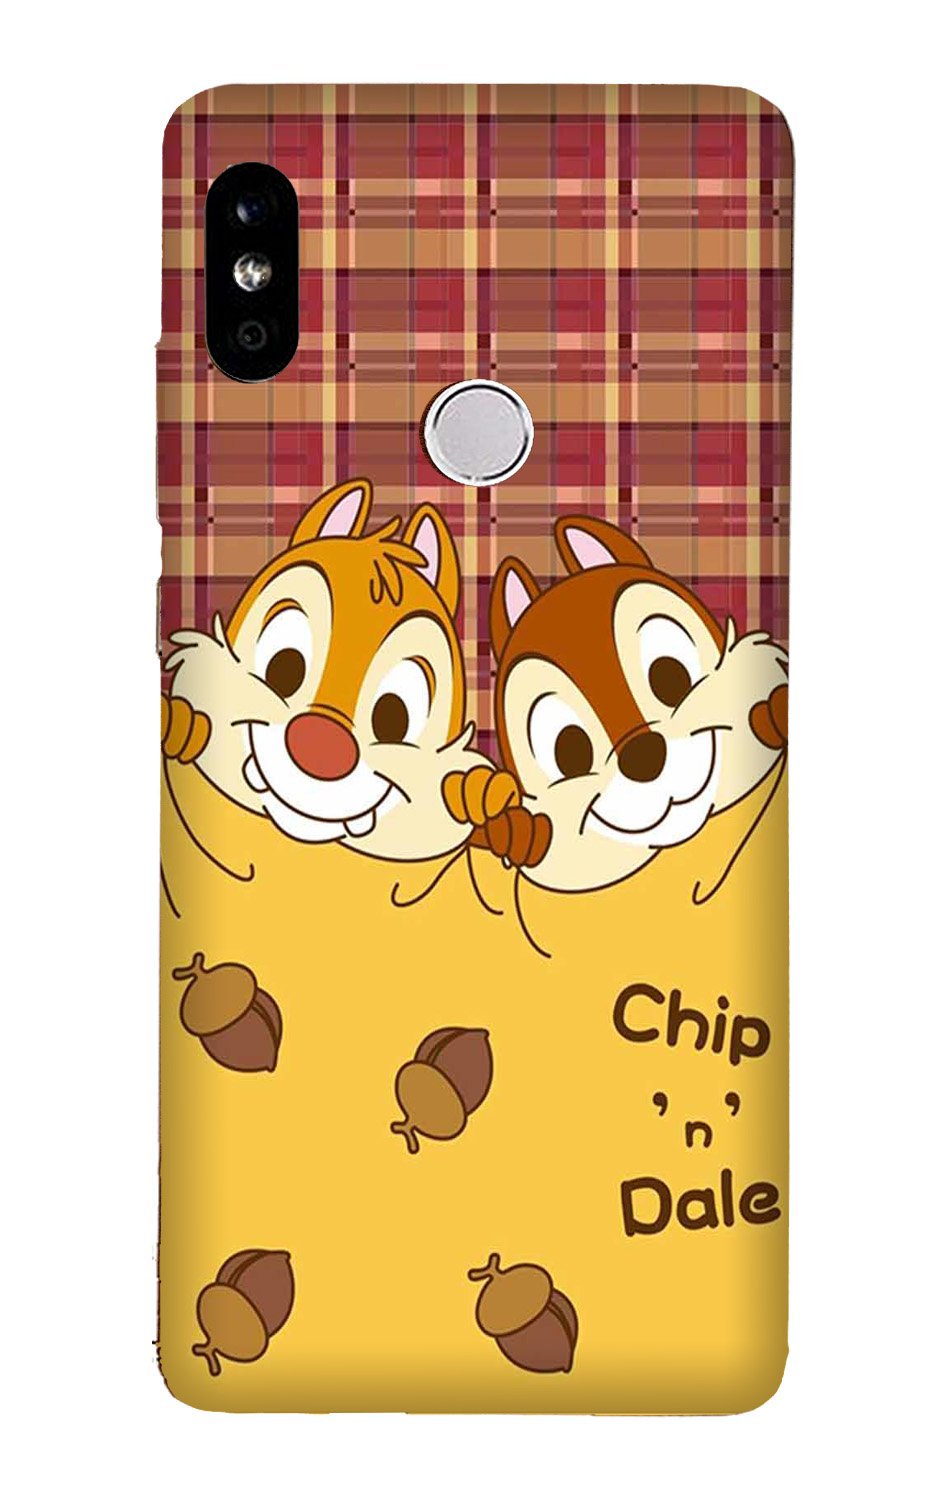 Chip n Dale Mobile Back Case for Redmi 6 Pro  (Design - 342)